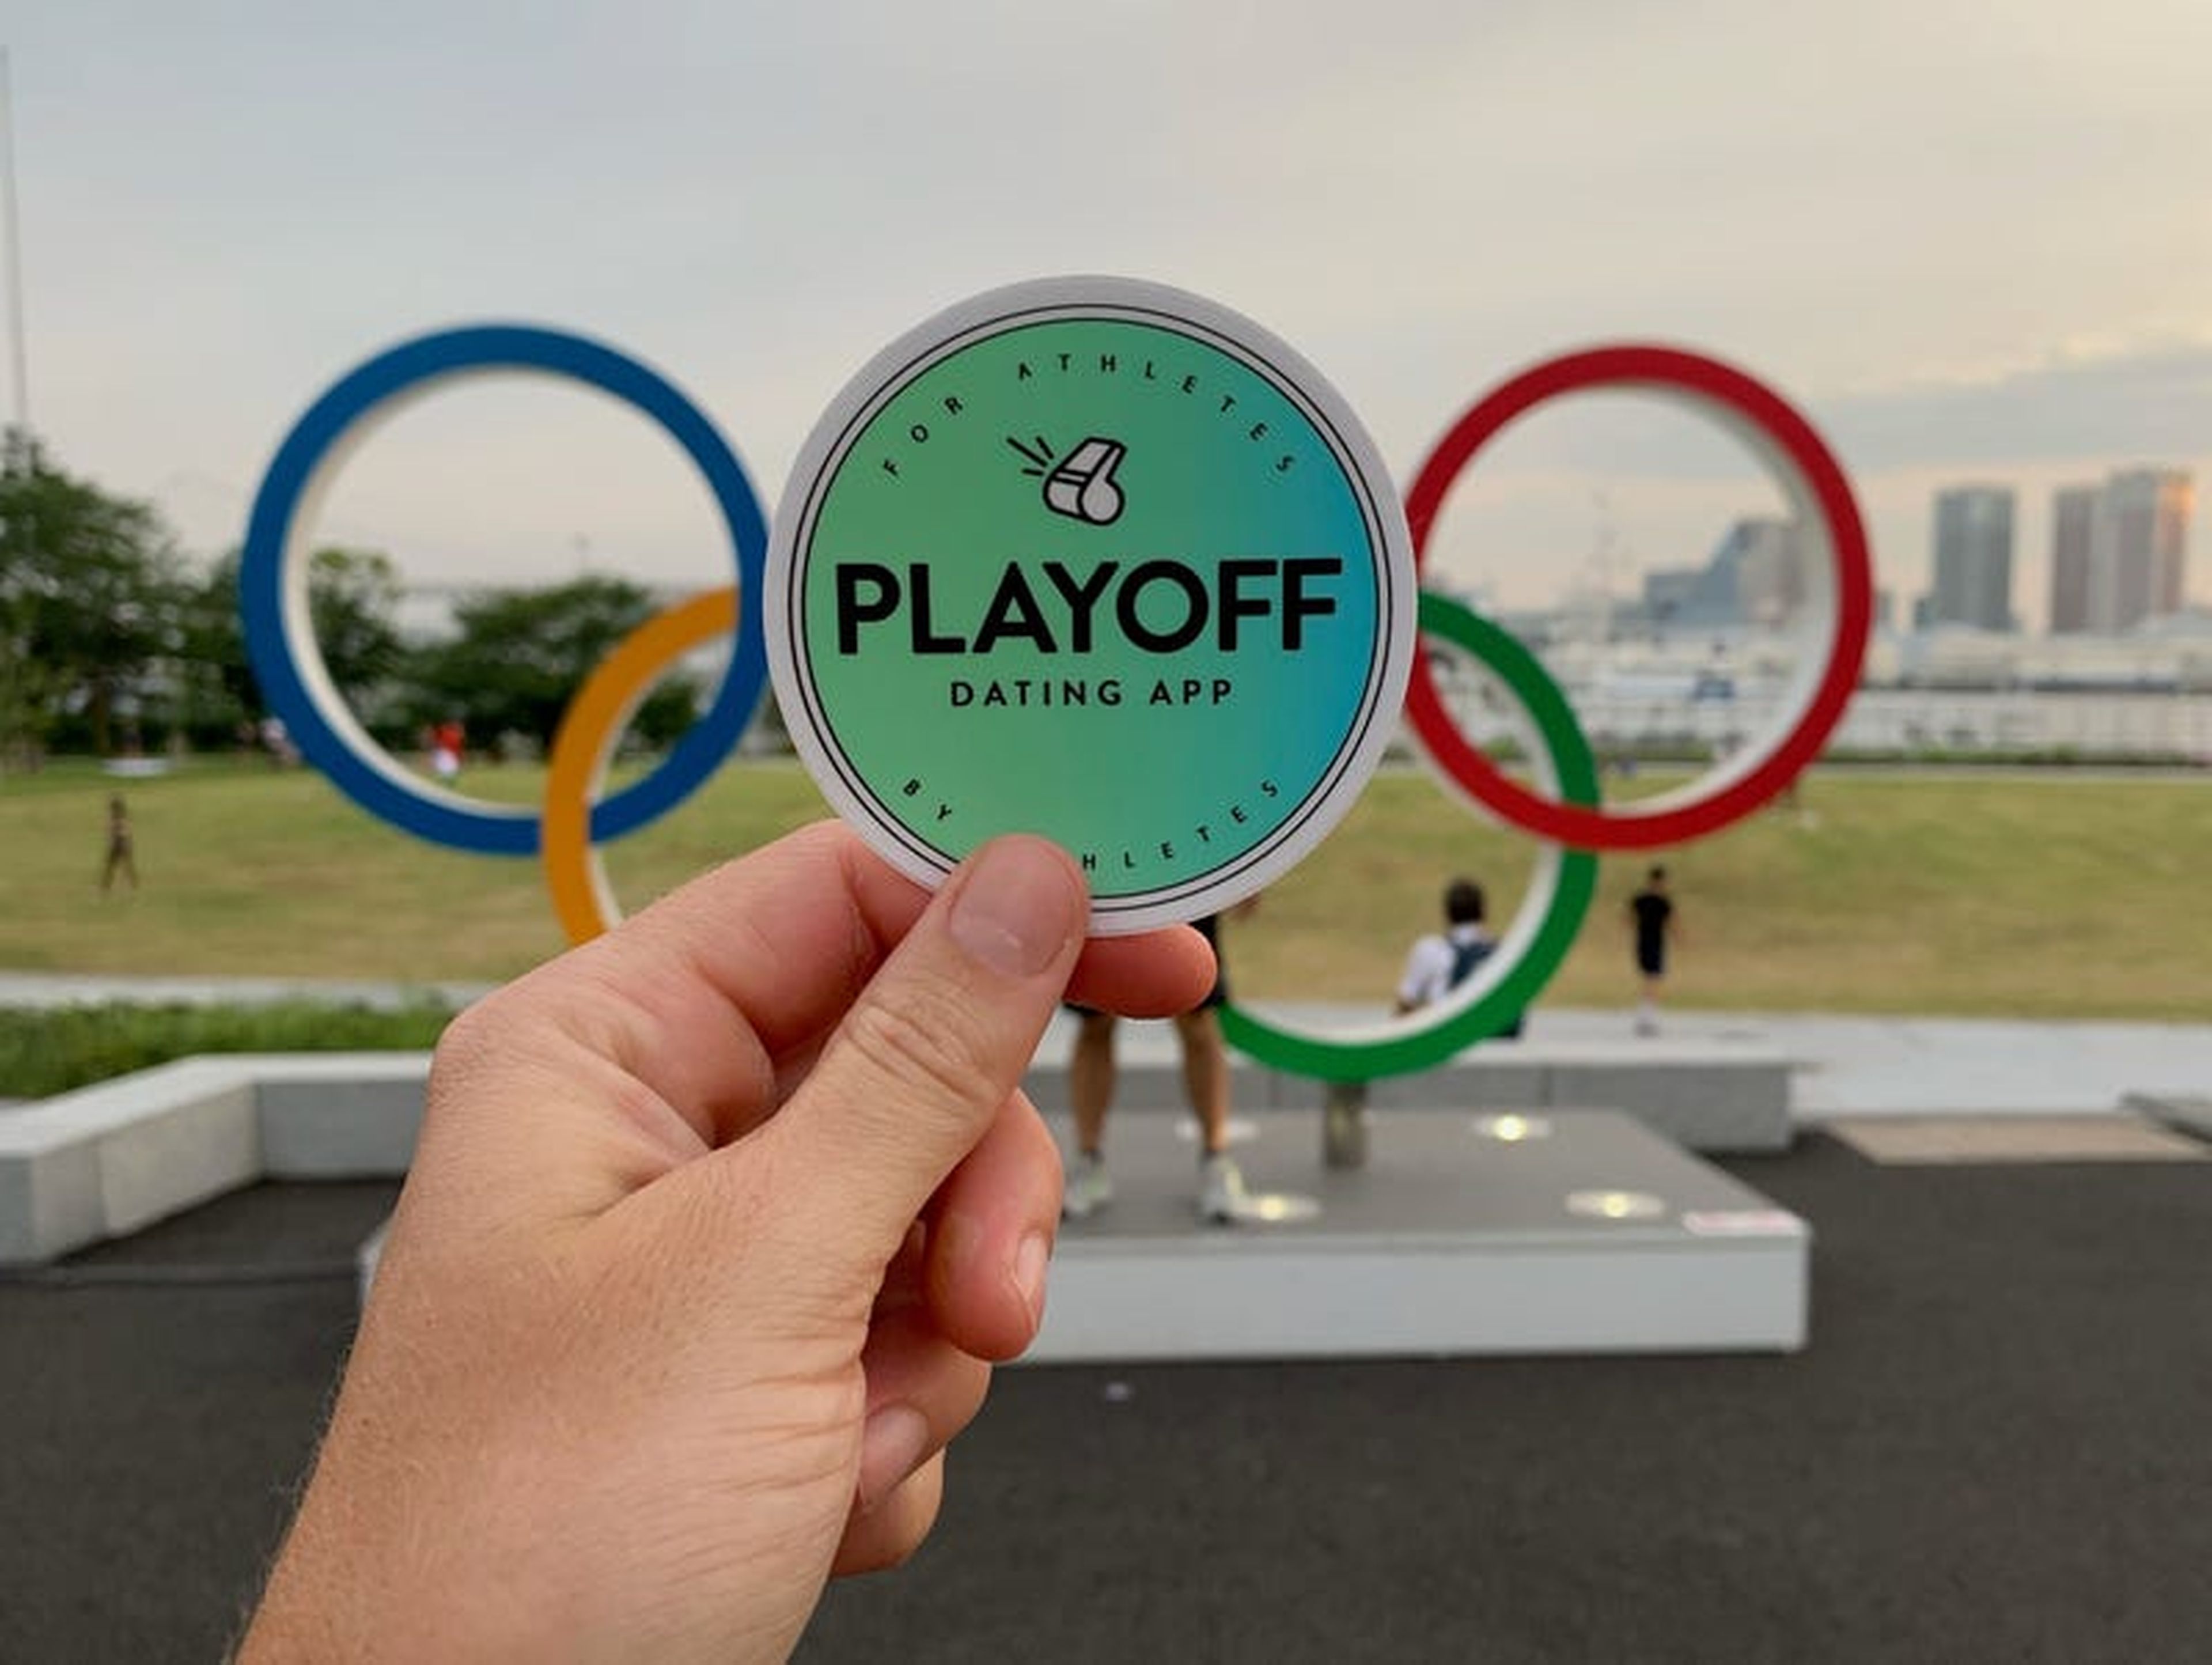 La pegatina de Playoff frente a los anillos olímpicos.